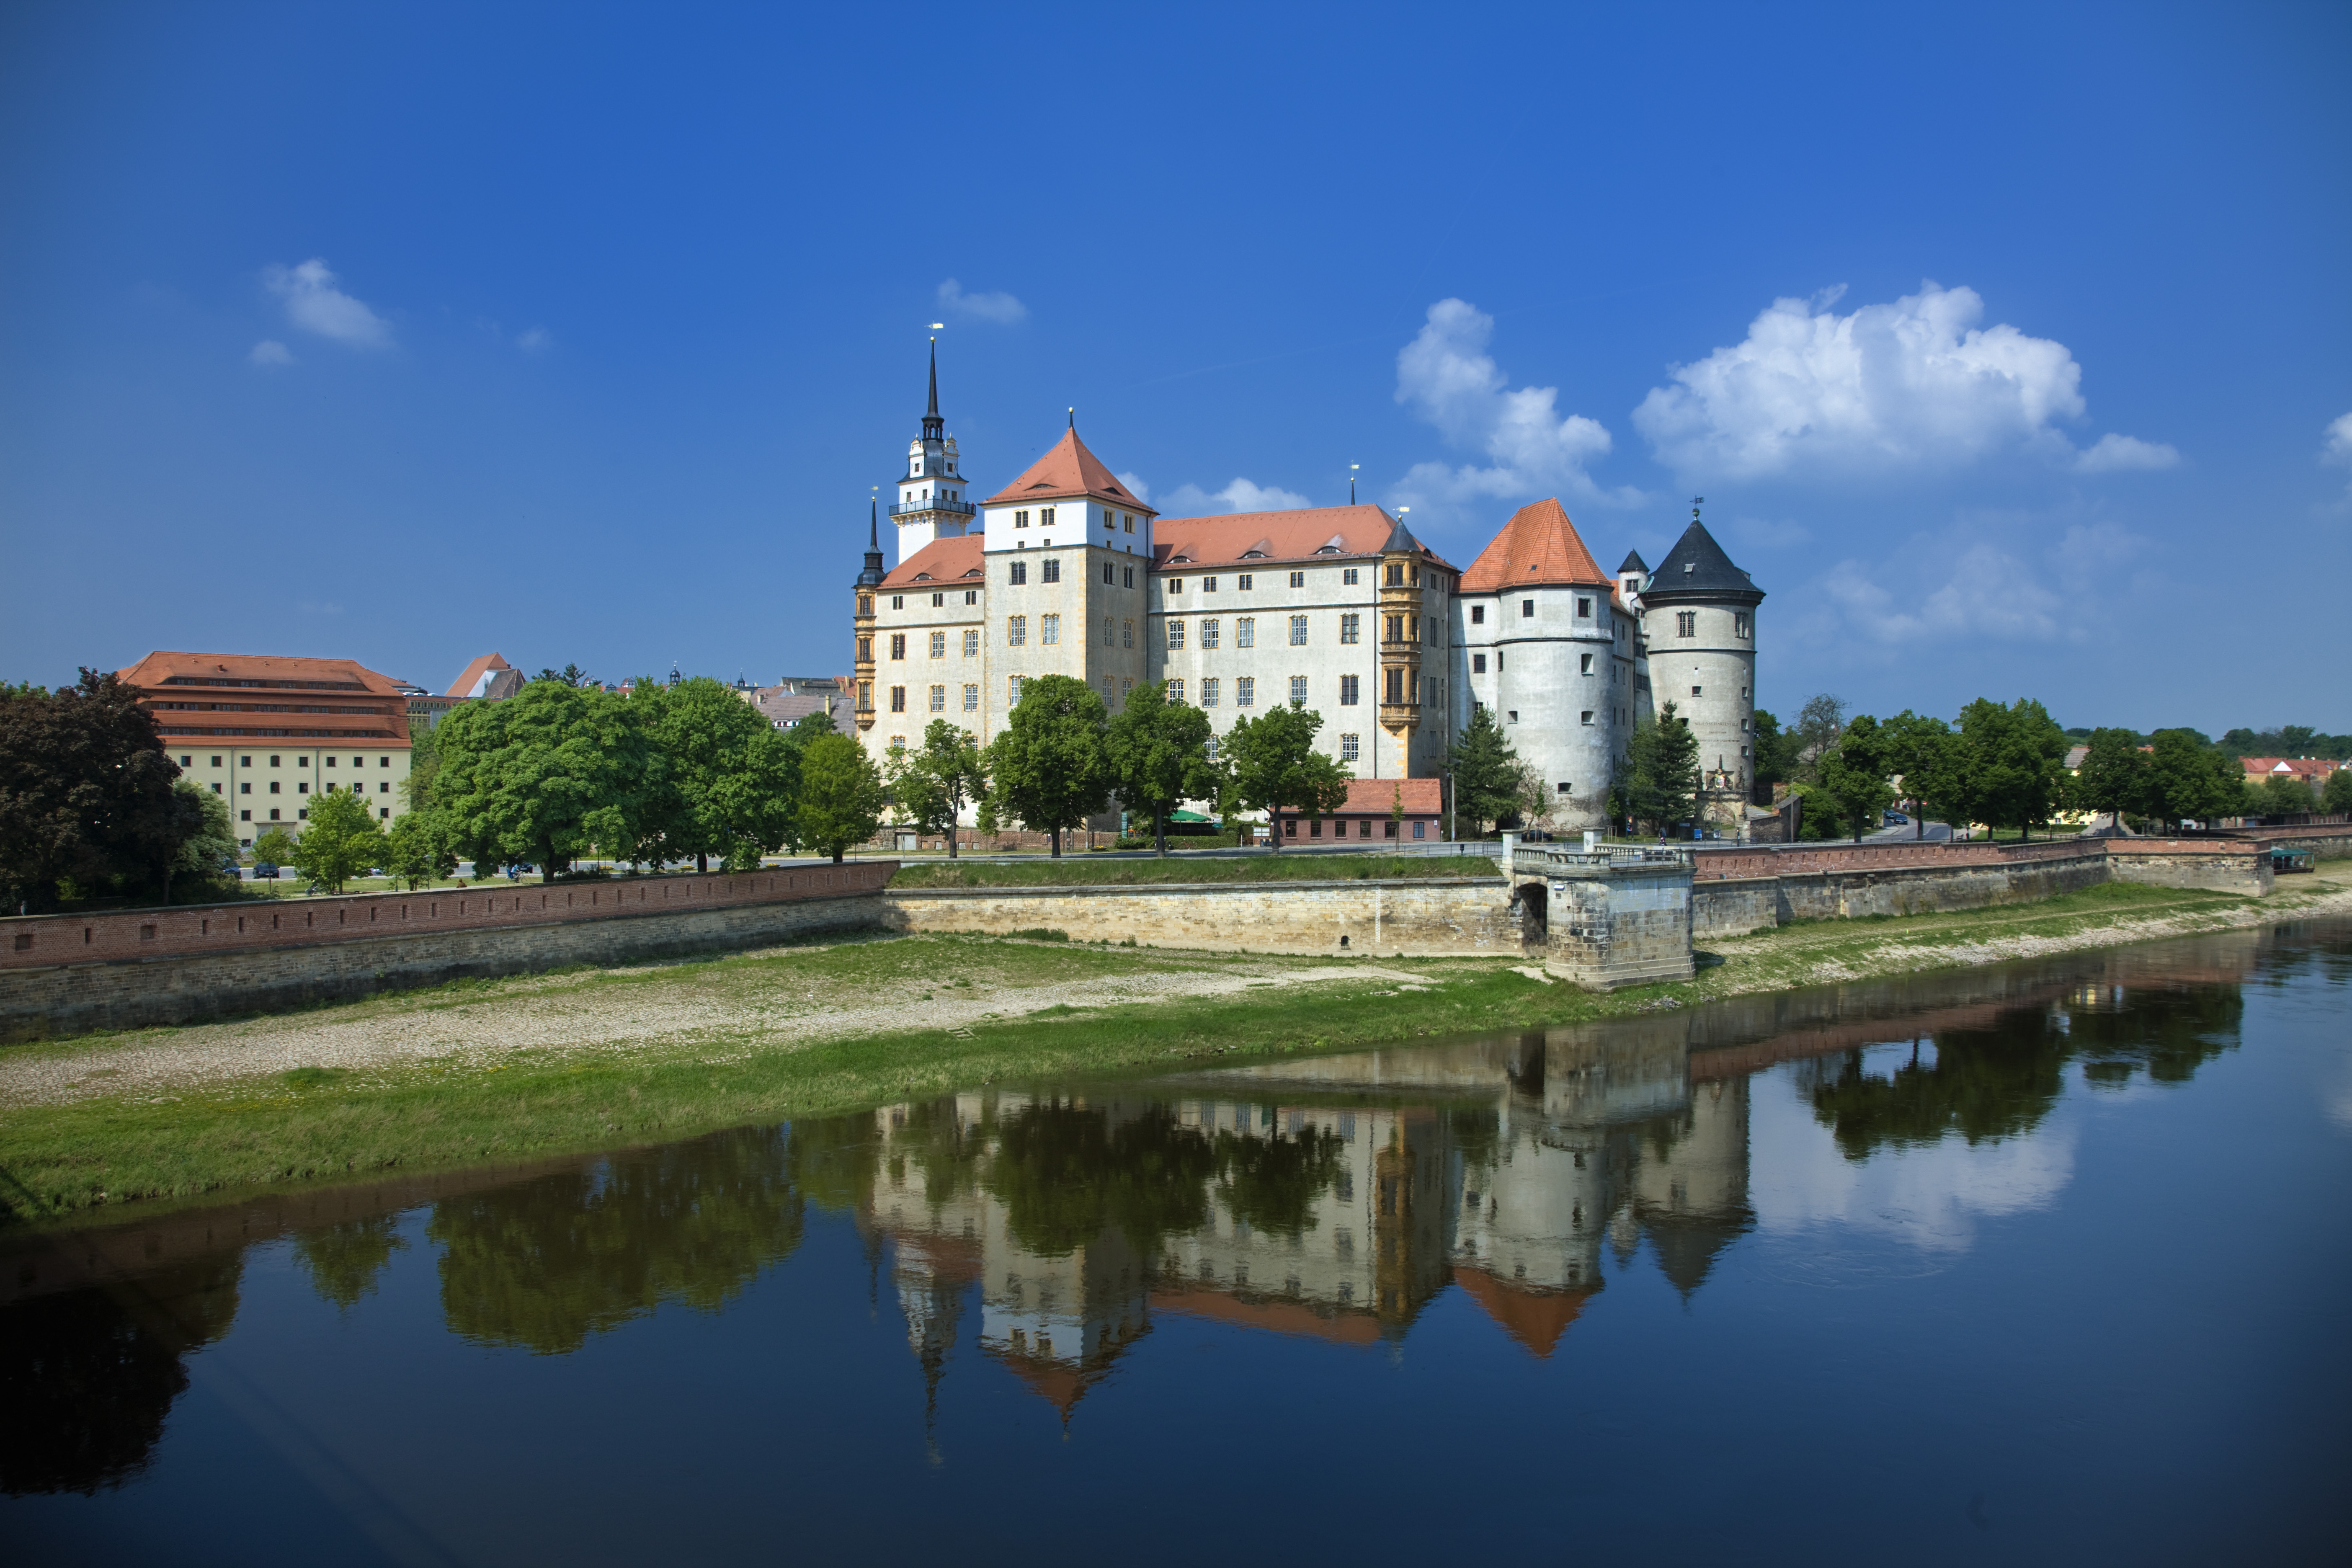 Slot Hartenfels in Torgau